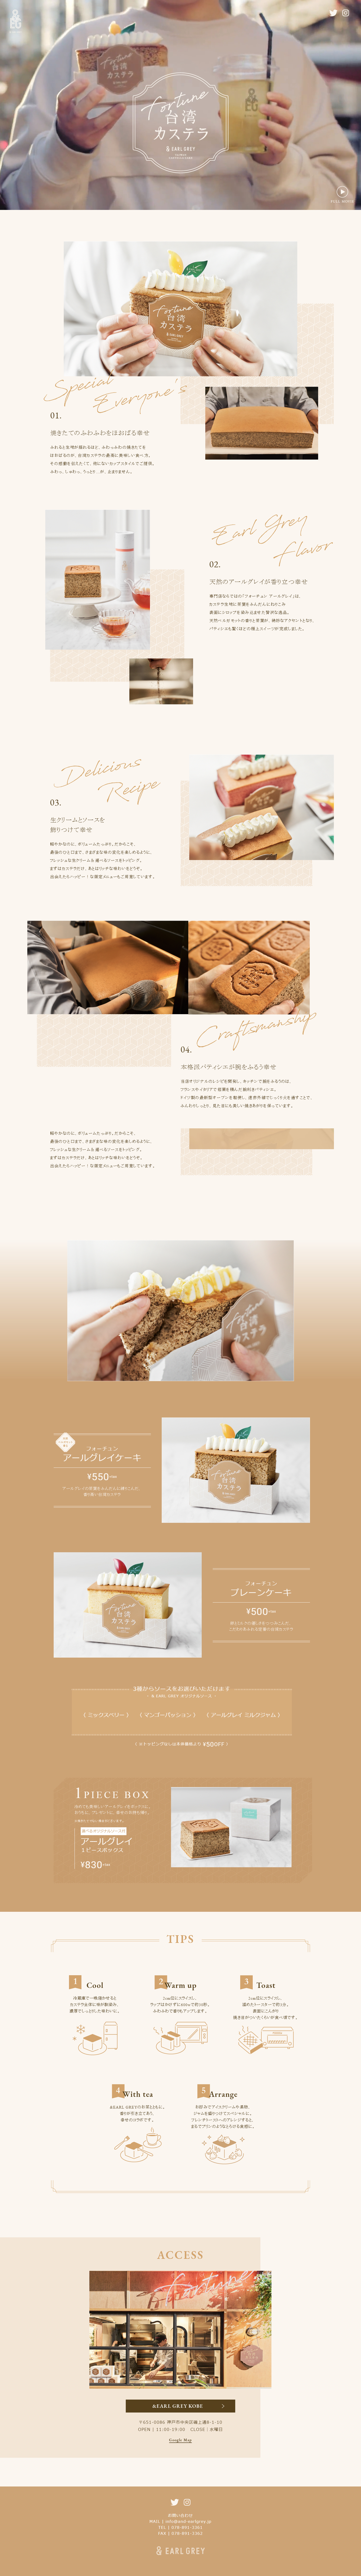 台湾castella蛋糕网站设计